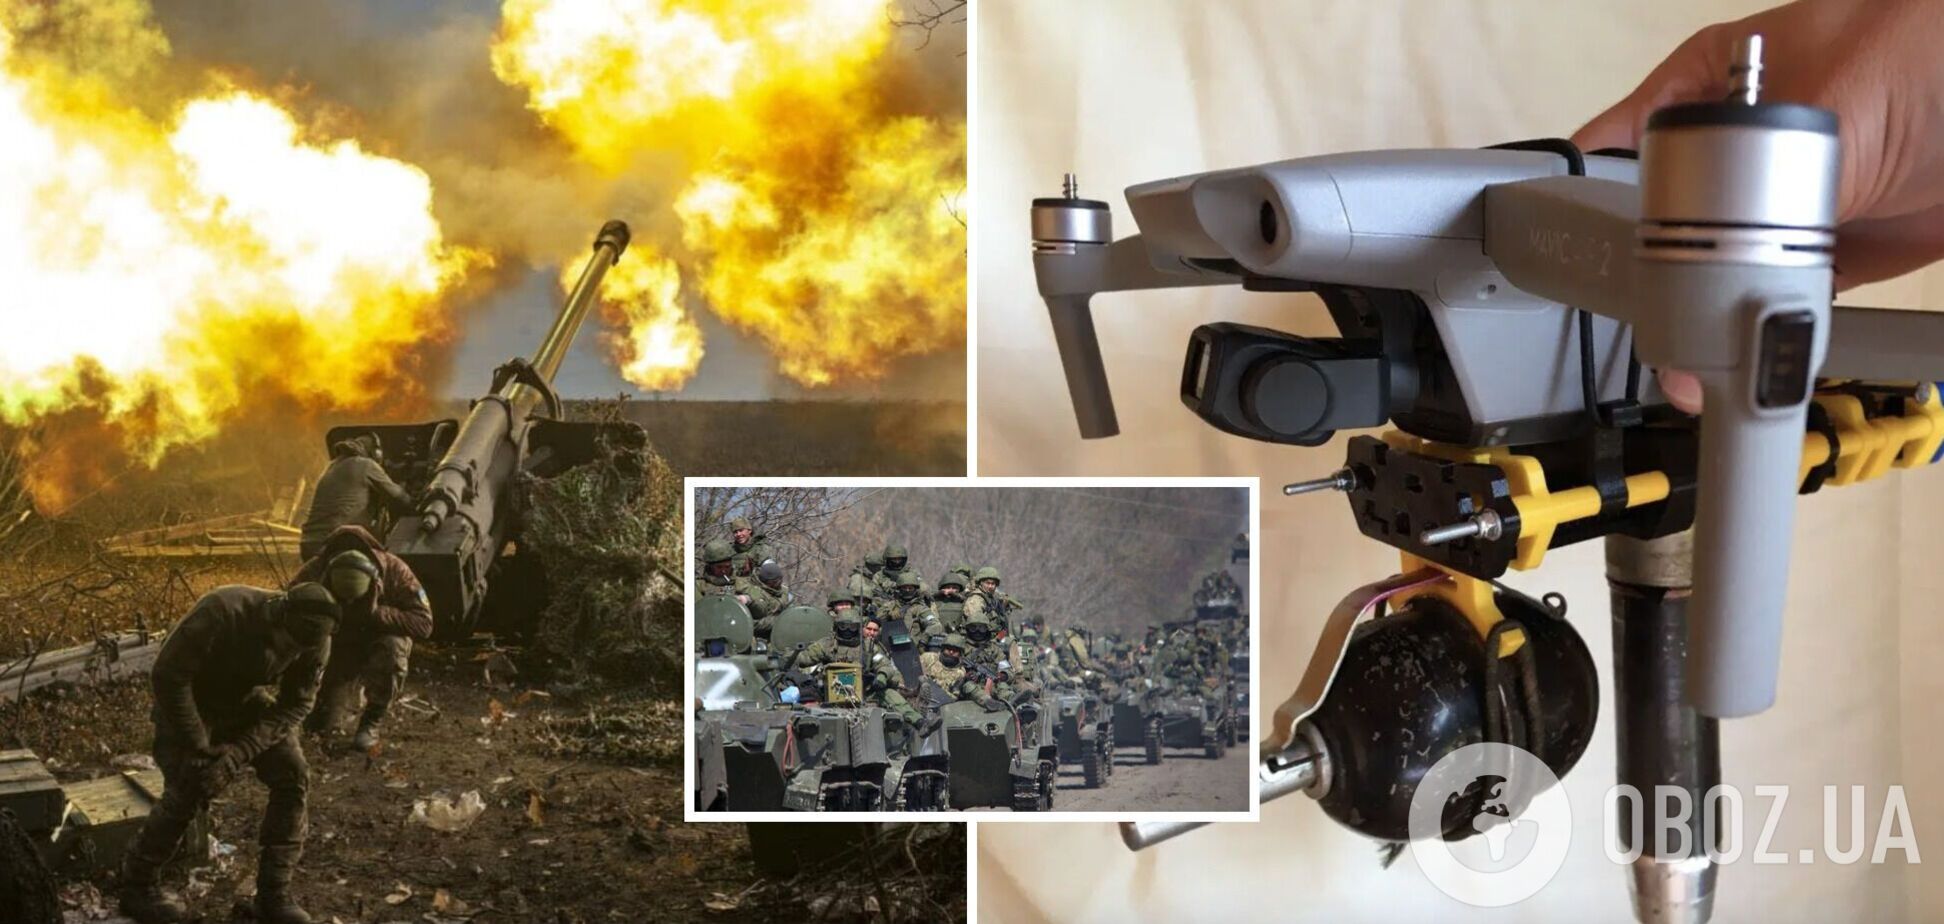 Forbes посчитал, сколько стоит уничтожение российских солдат и техники: самый дешевый способ – дроны. Инфографика